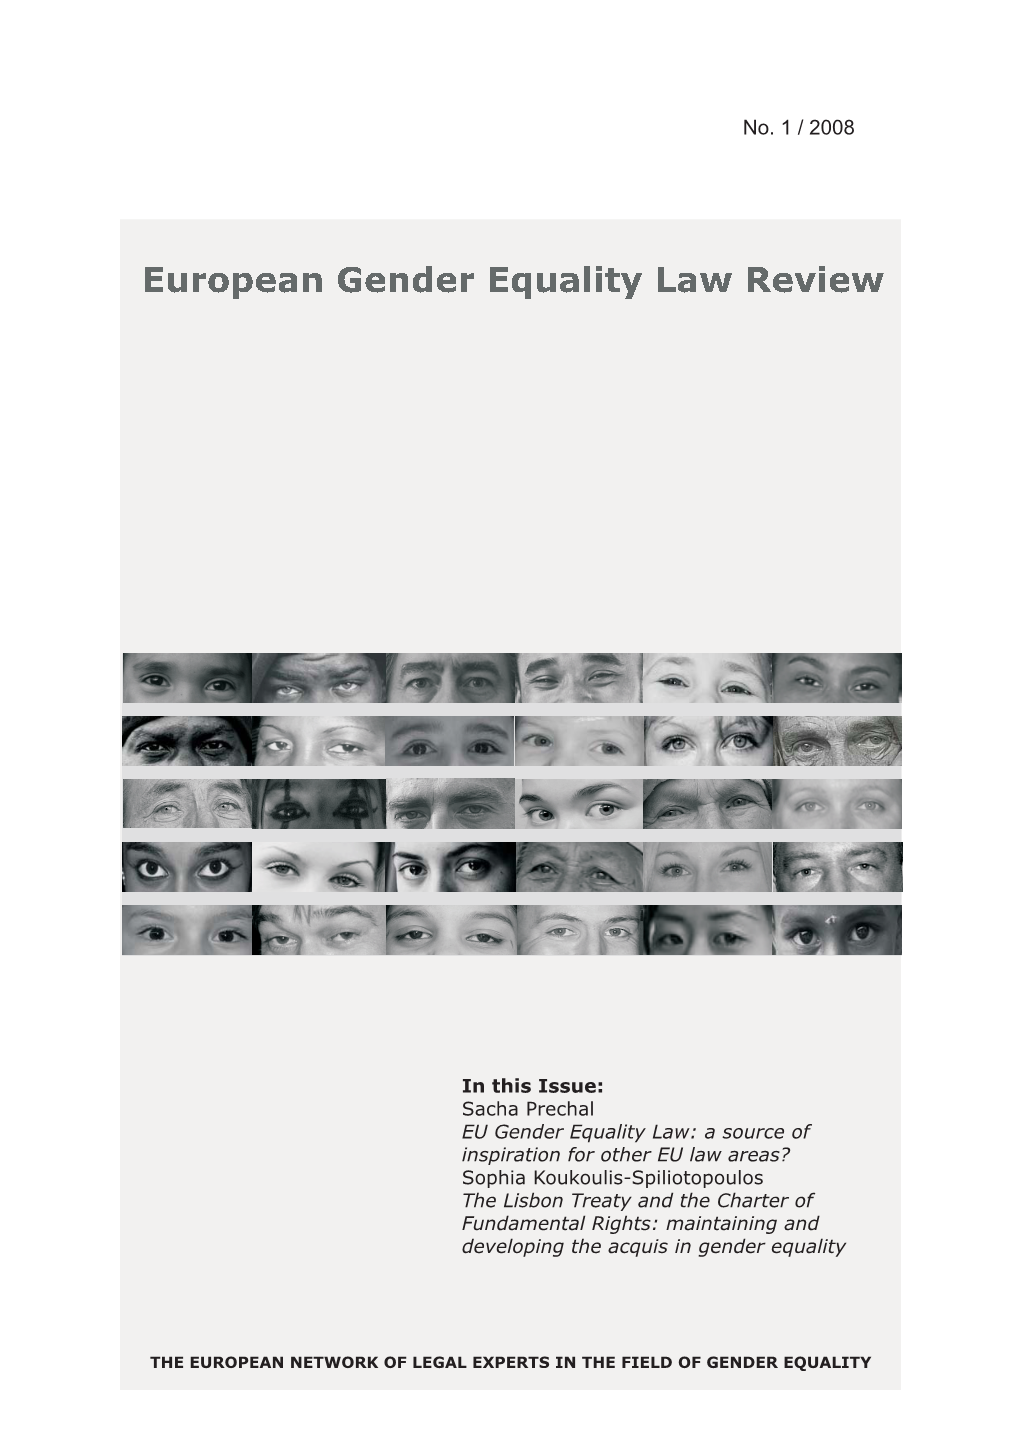 EU Gender Equality